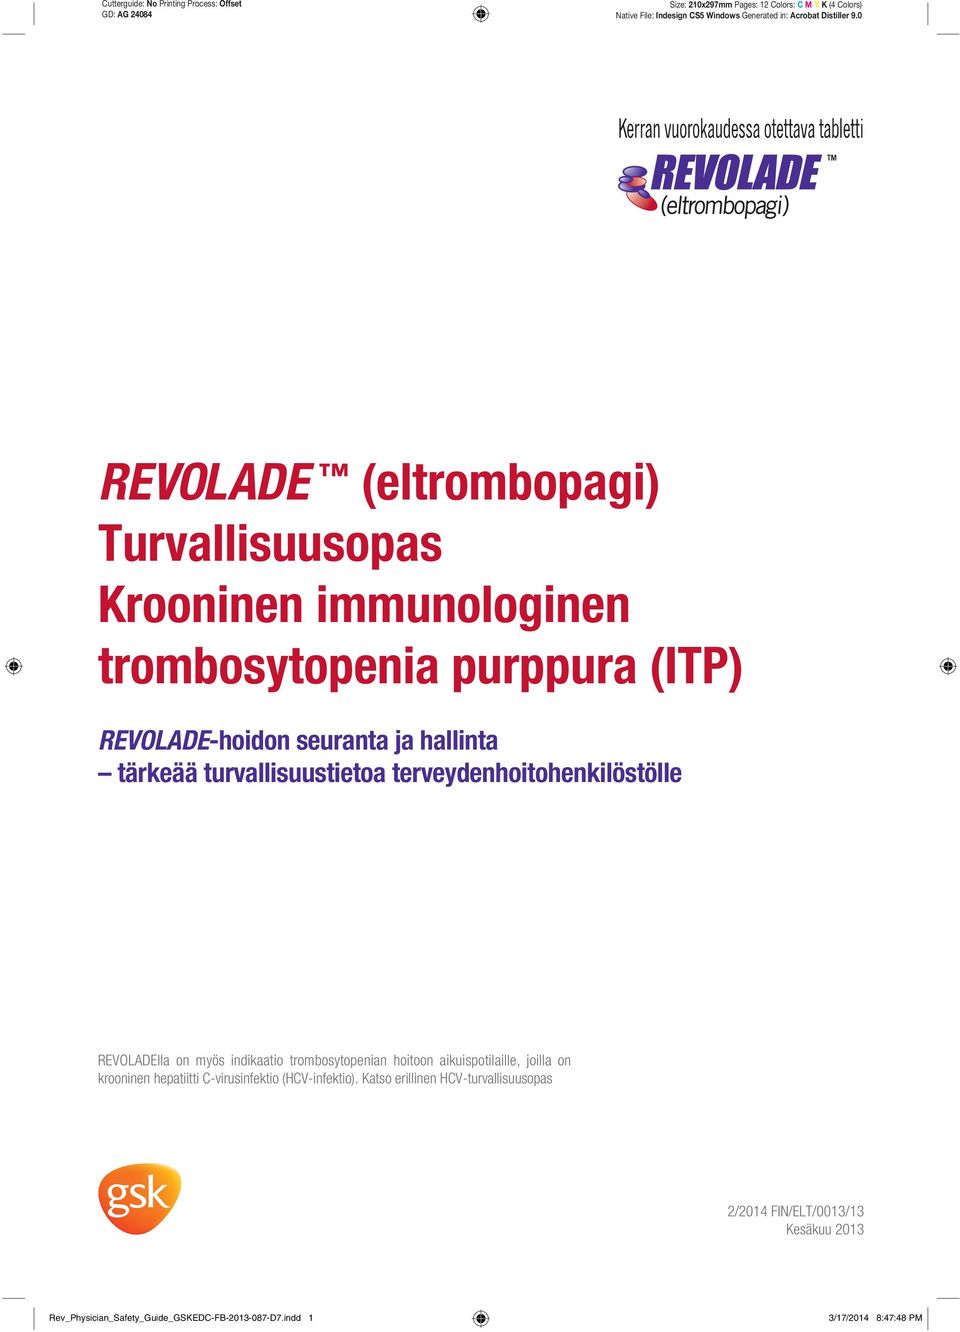 0 REVOLADE (eltrombopagi) Turvallisuusopas Krooninen immunologinen trombosytopenia purppura (ITP) REVOLADE-hoidon seuranta ja hallinta tärkeää turvallisuustietoa